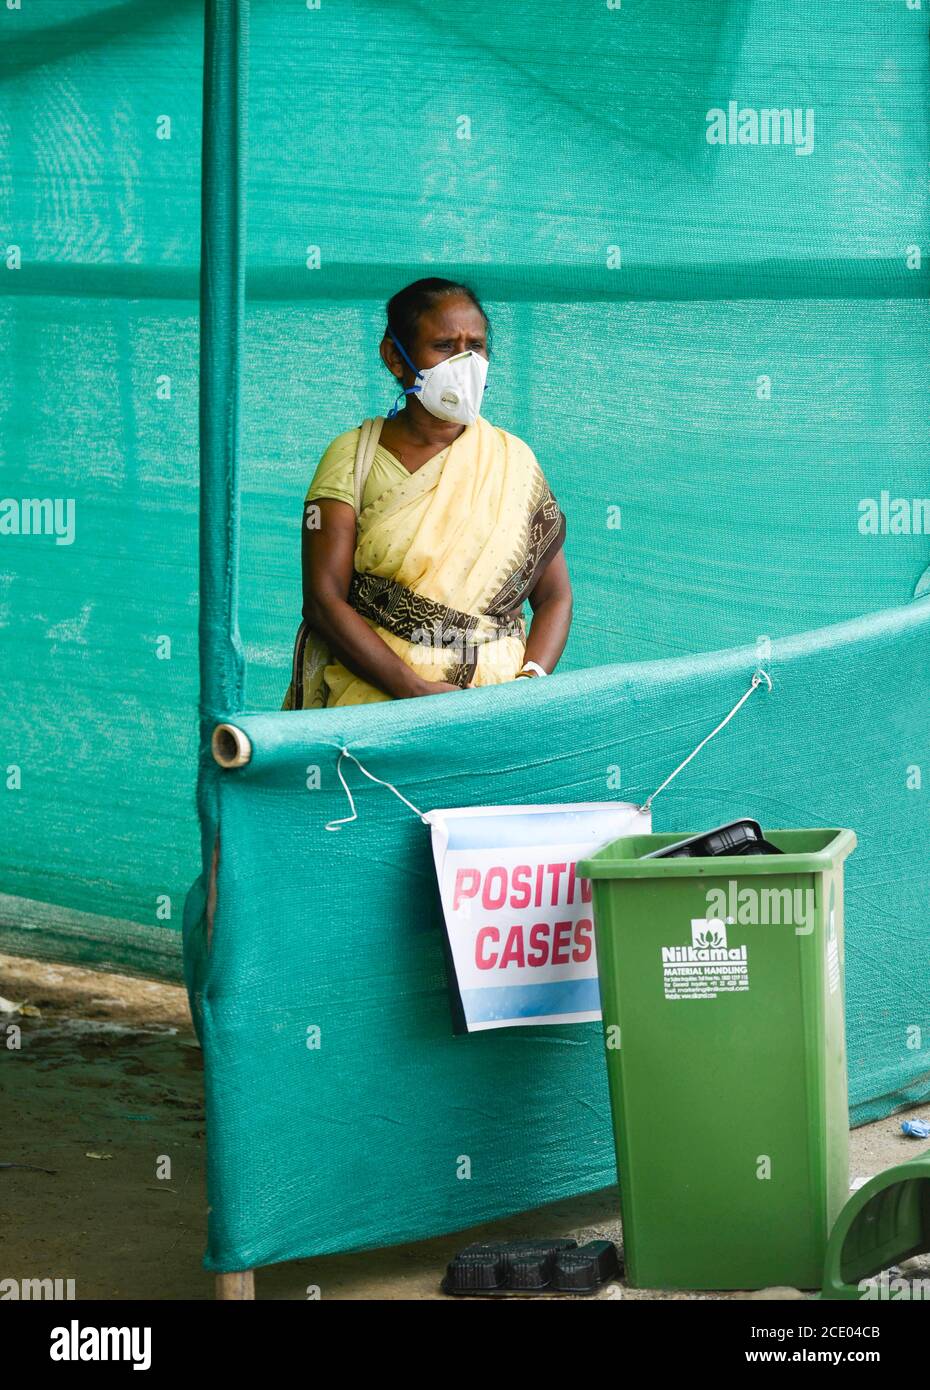 Guwahati, Assam, Inde. 30 août 2020. Un patient positif au coronavirus COVID-19 attendant une ambulance dans un centre de collecte d'écouvillons, à Guwahati. Assam a franchi la barre des cas d'un lakh (100 mille) coronavirus dans la nuit du vendredi 28 août 2020. Crédit : David Talukdar/ZUMA Wire/Alay Live News Banque D'Images